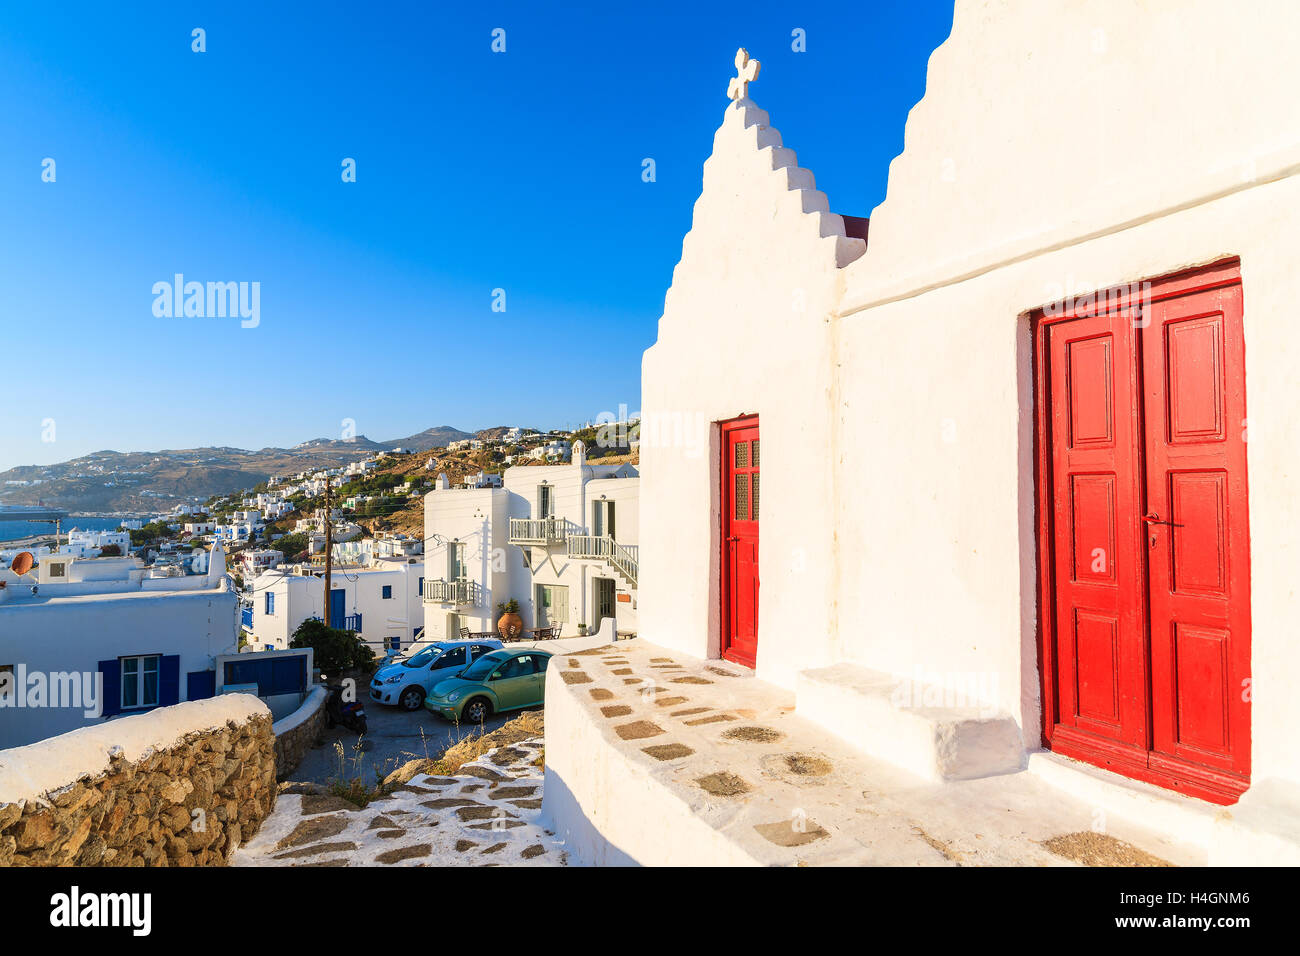 Grec typique église blanche avec portes rouges dans la ville de Mykonos, l'île de Mykonos, Grèce Banque D'Images